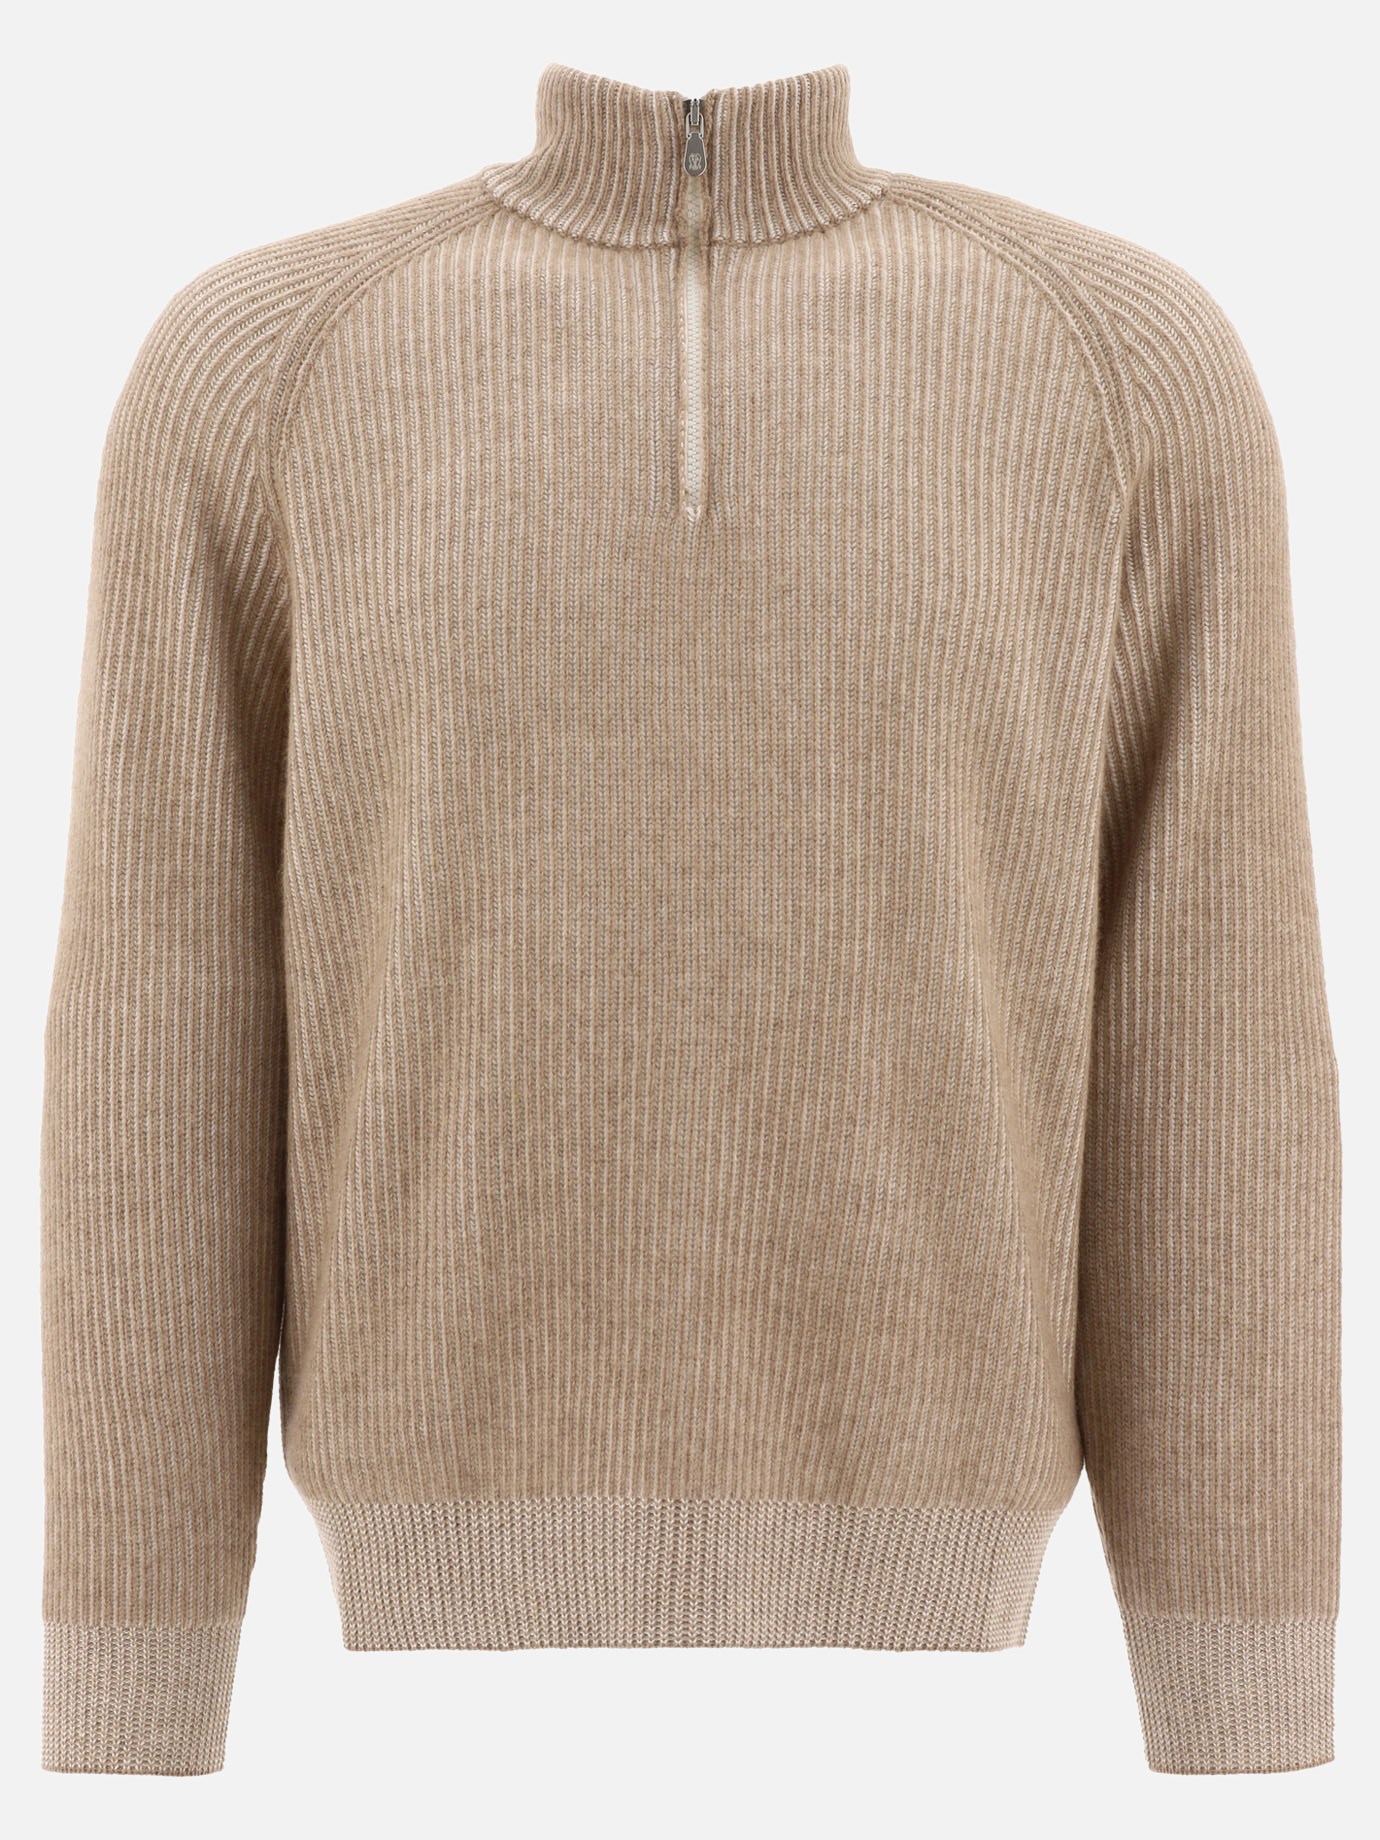 Vanisé half zip sweater with raglan sleeves